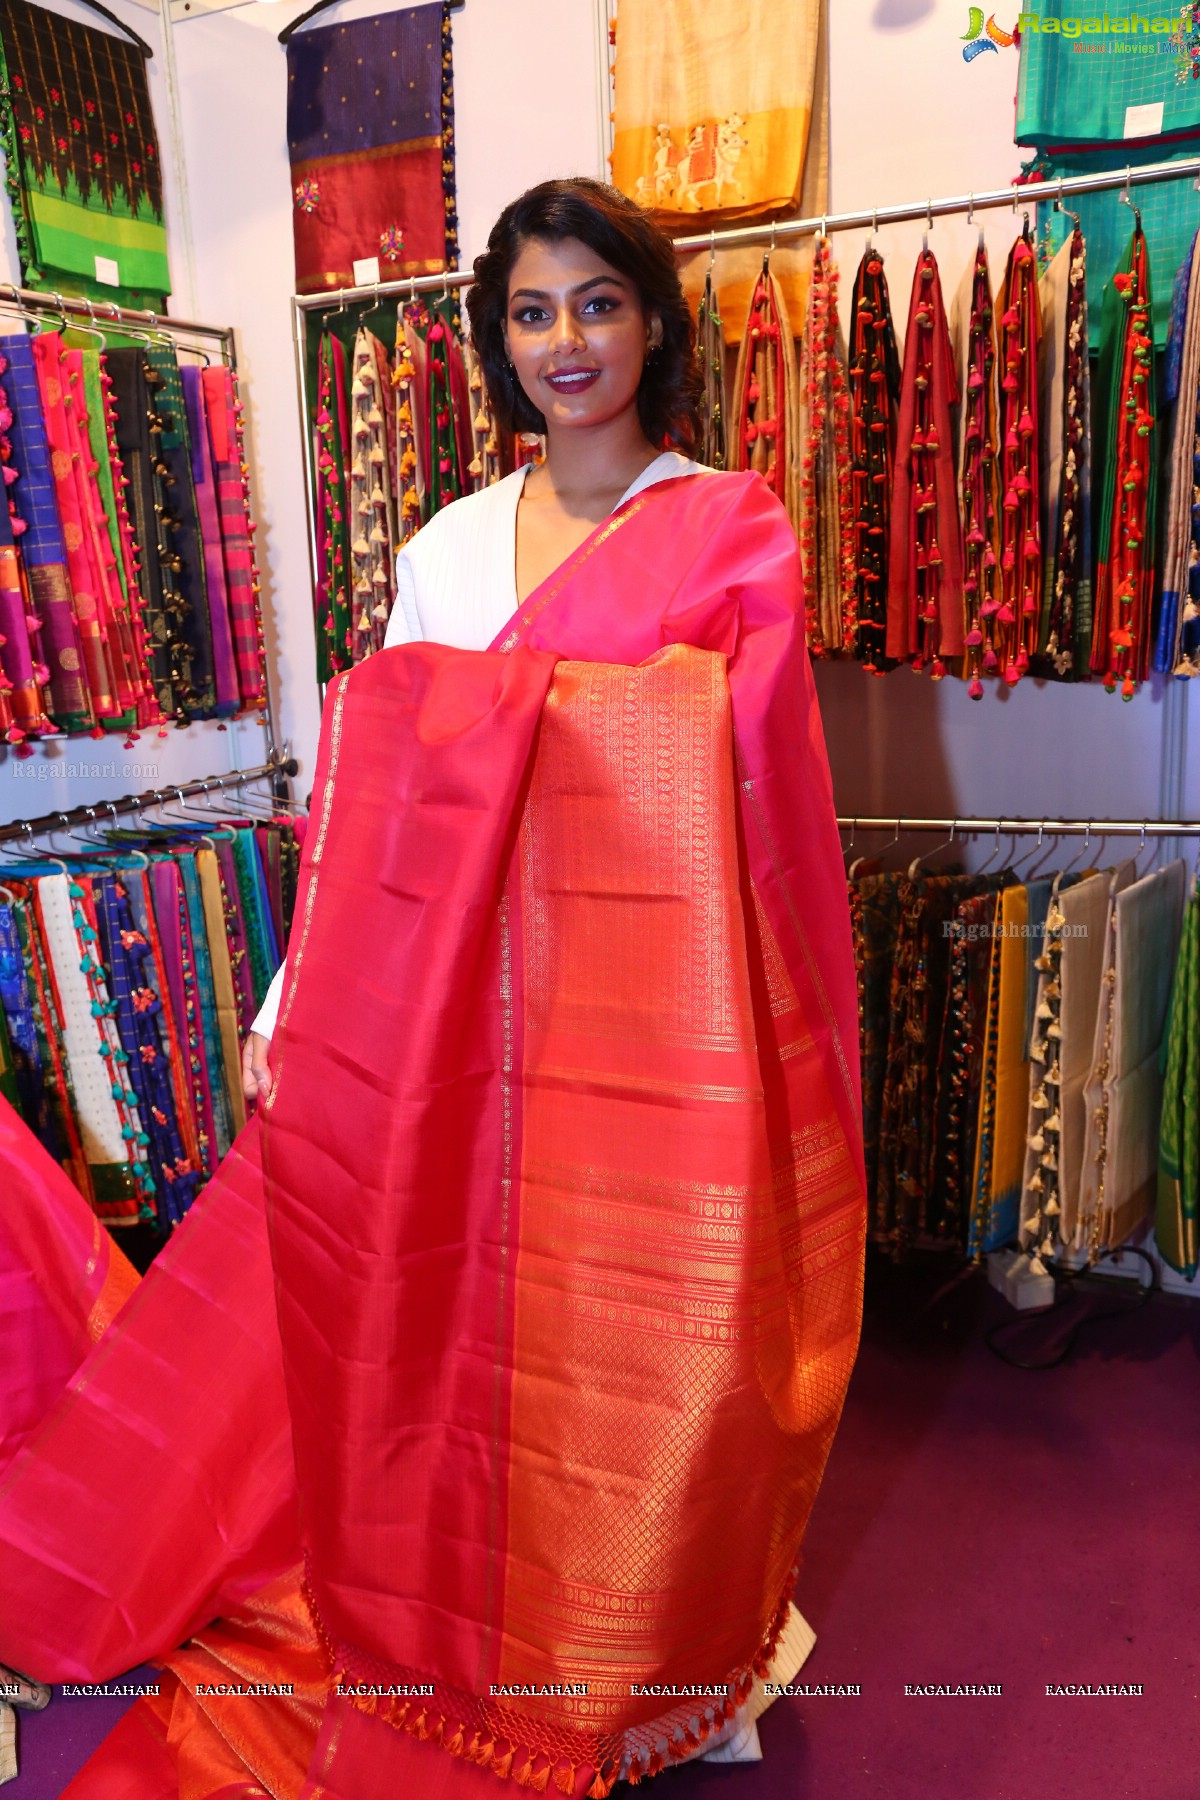 Anisha Ambrose Launches Hi-Life Luxury Fashion Exhibition at Novotel HICC